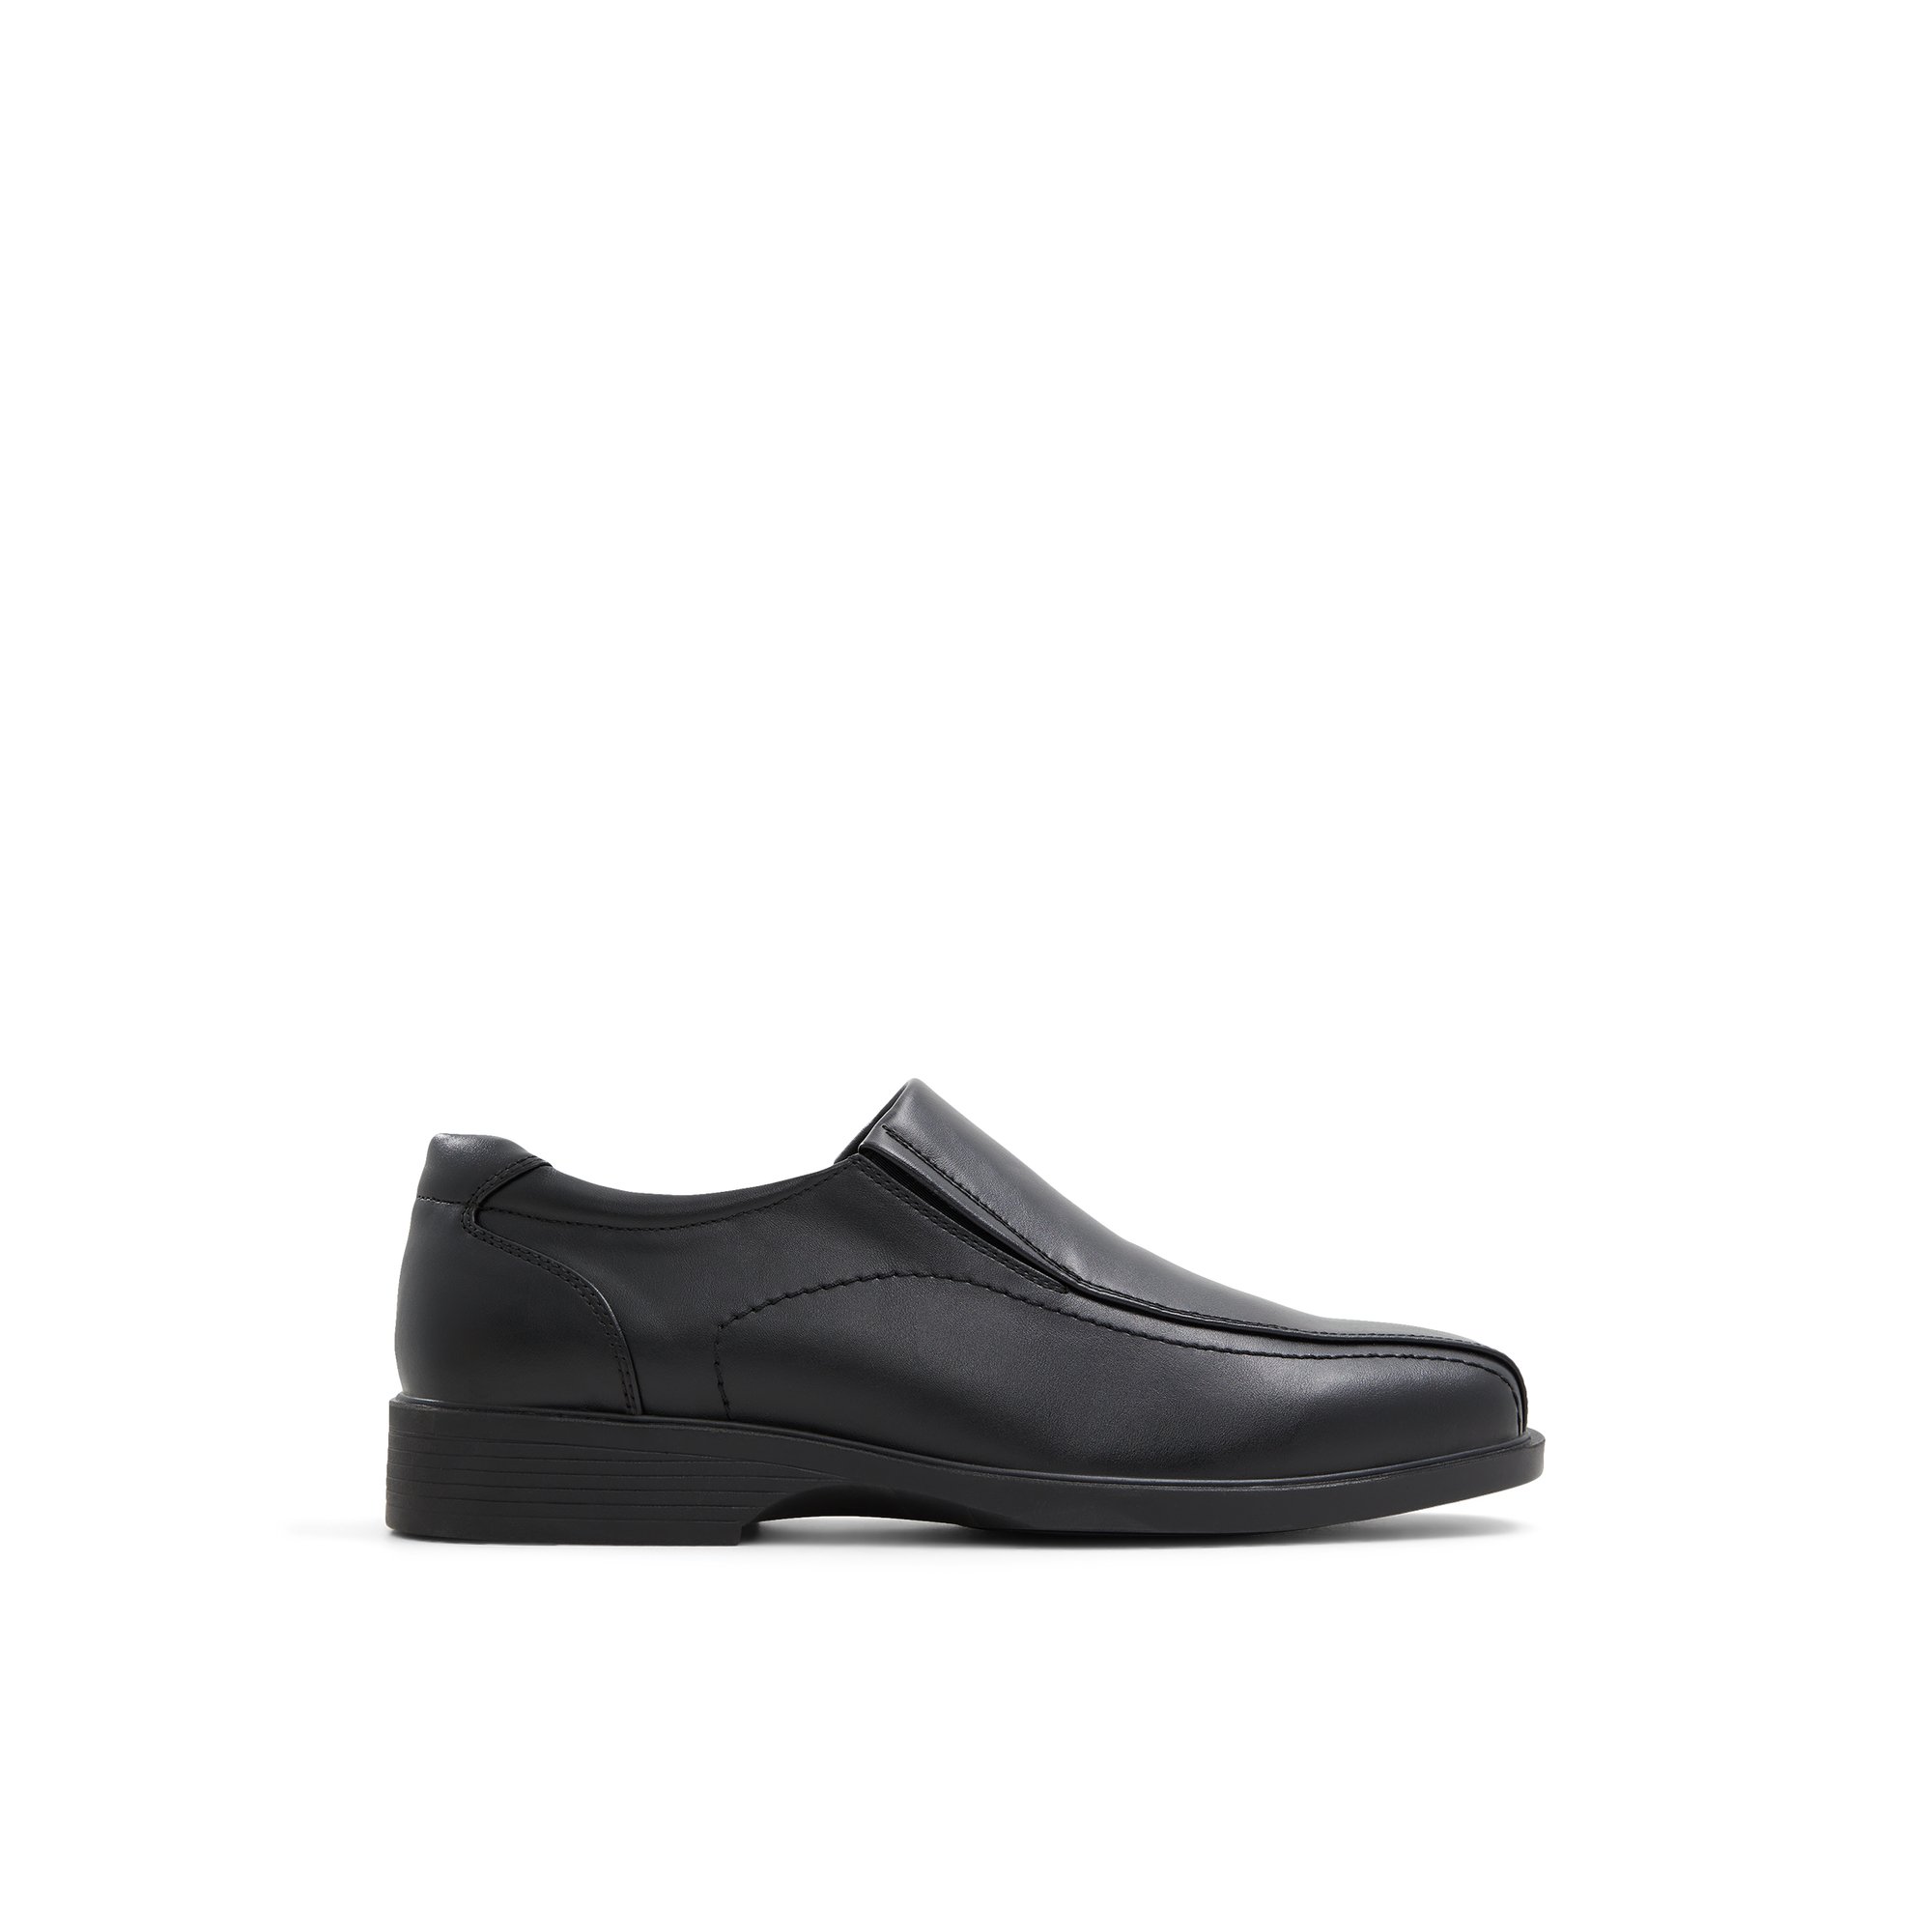 K Studio Iggnatz-w - Men's Footwear Shoes Dress Loafers